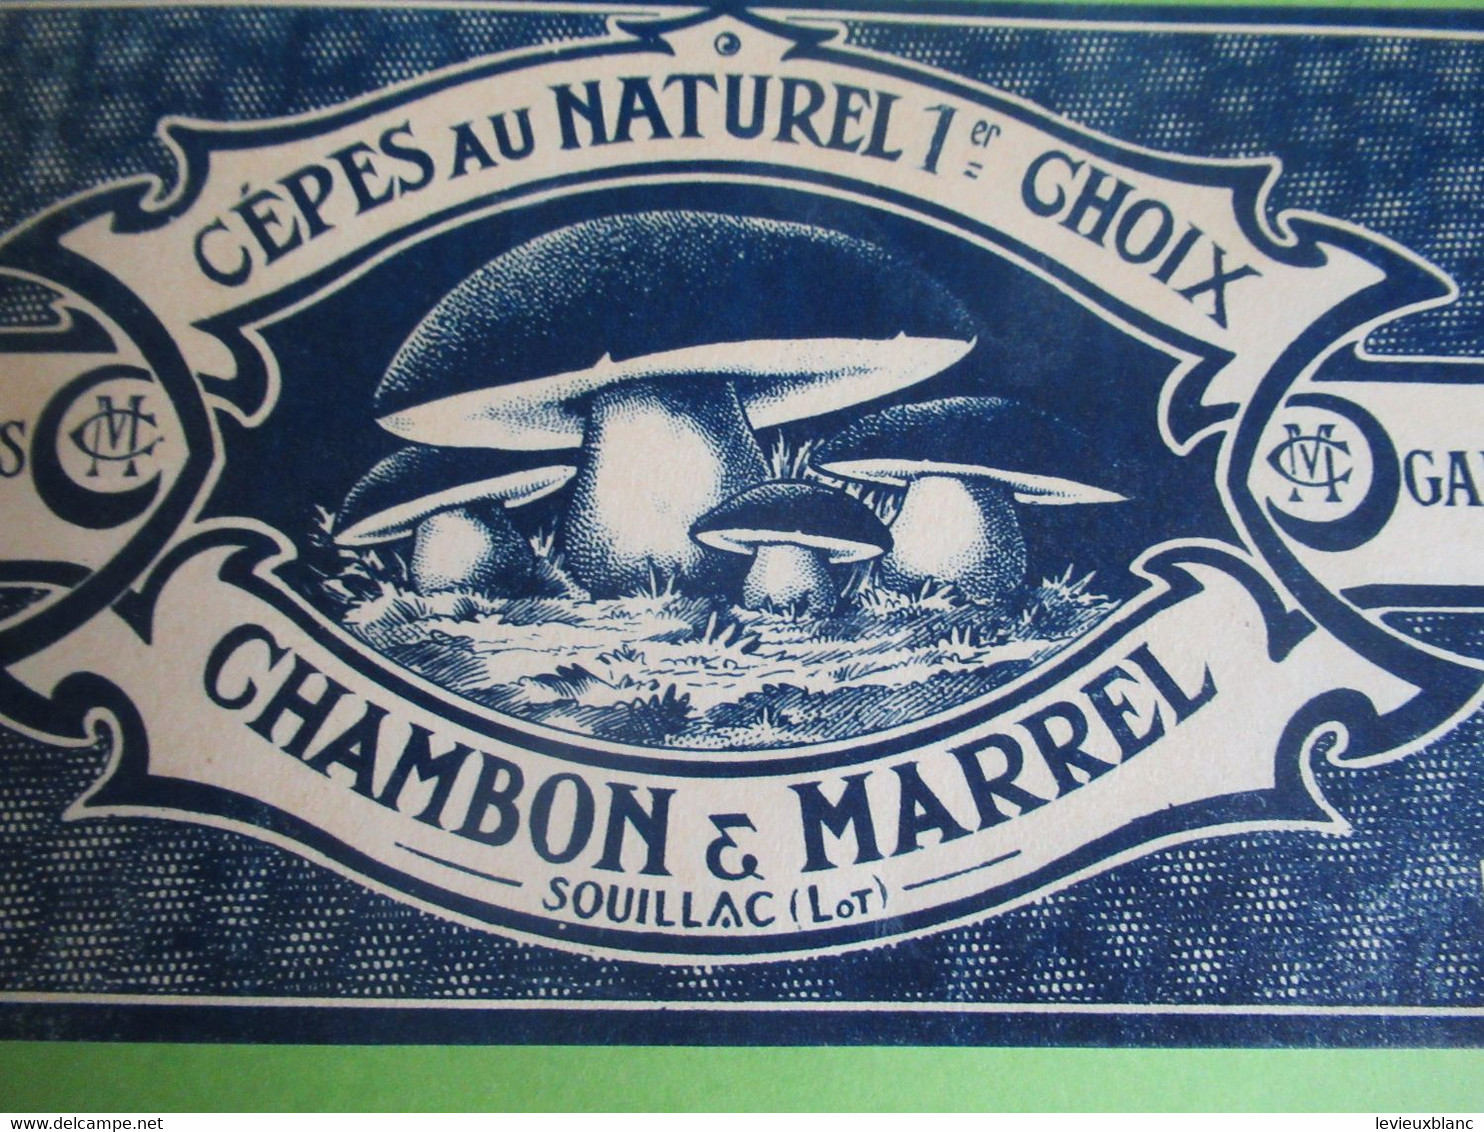 Etiquette Conserve/Cèpes Au Naturel 1er Choix/CHAMBON & MARREL/SOUILLAC ( Lot ) / Début XX                  ETIQ182 - Fruits & Vegetables